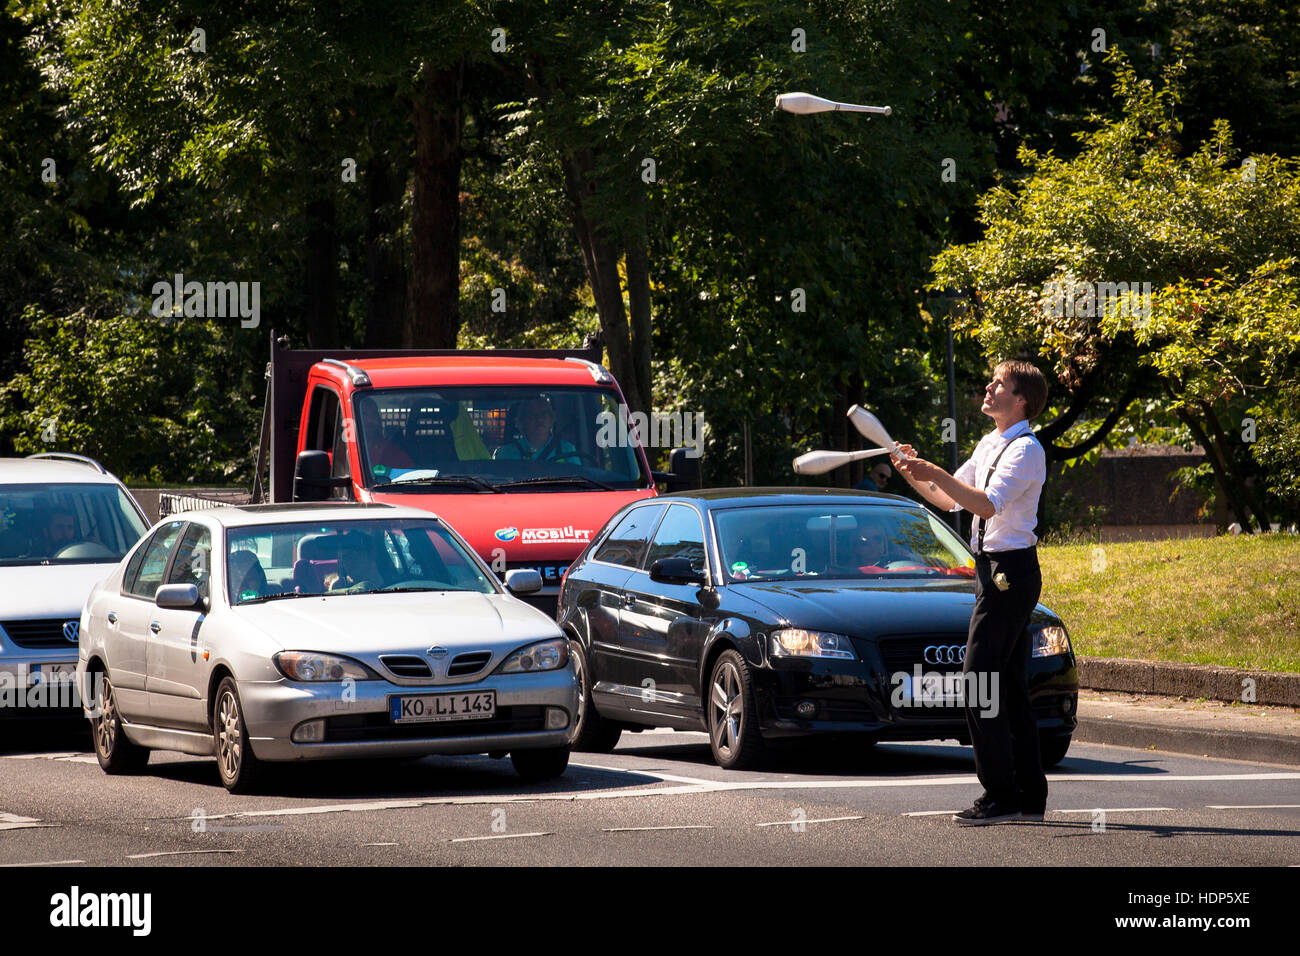 Allemagne, Cologne, jongleur, à l'avant des voitures, l'attente aux feux de circulation, après l'exercice il demande les pilotes pour un don. Banque D'Images